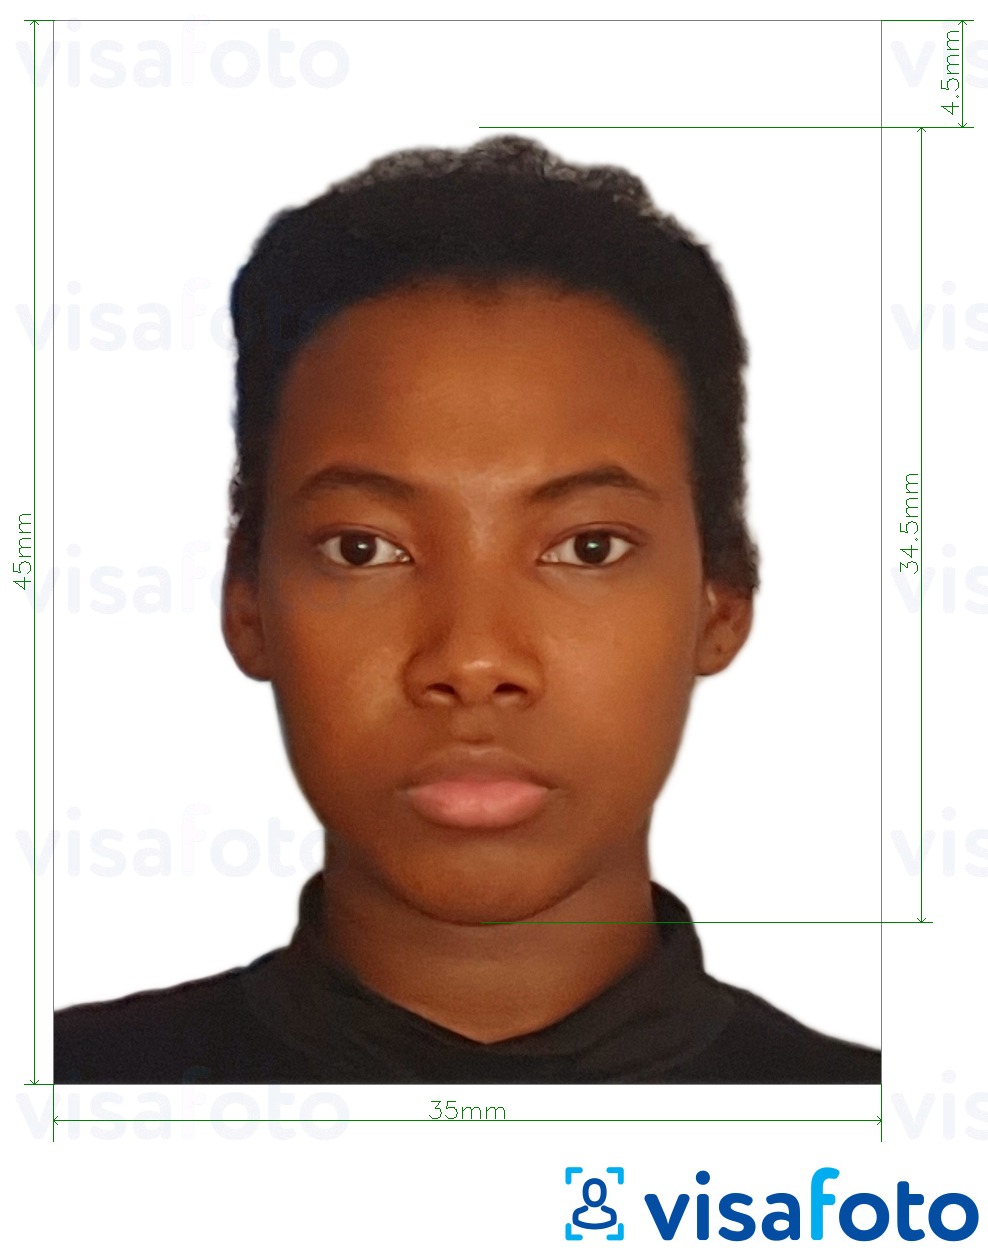  Keenia pass 35x45 mm fotonäidis koos täpse infoga mõõtude kohta.